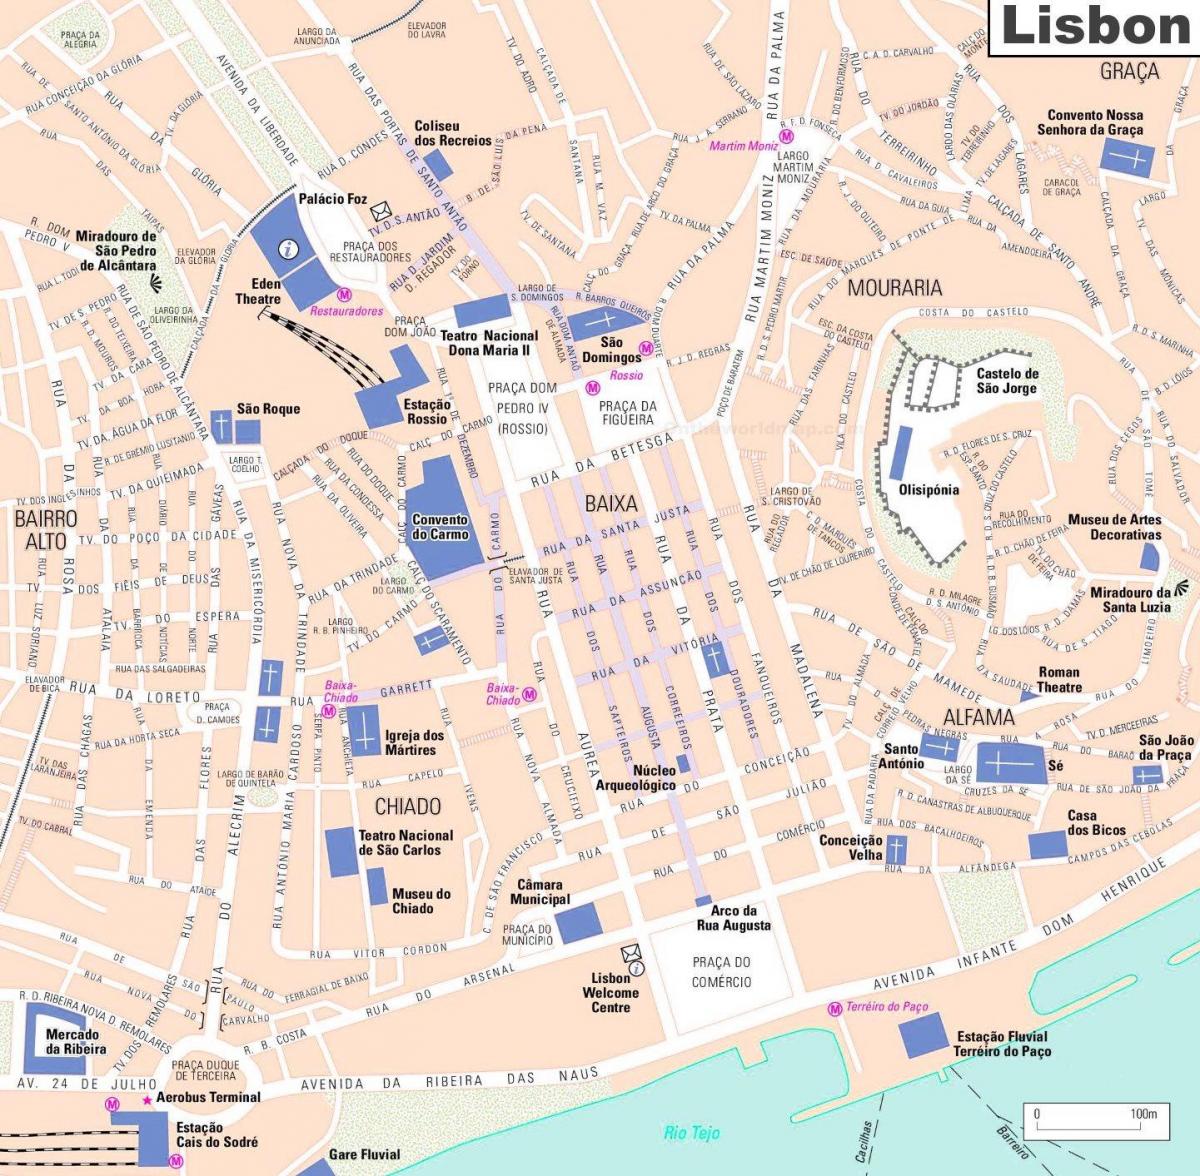 خريطة لشبونة لشبونة